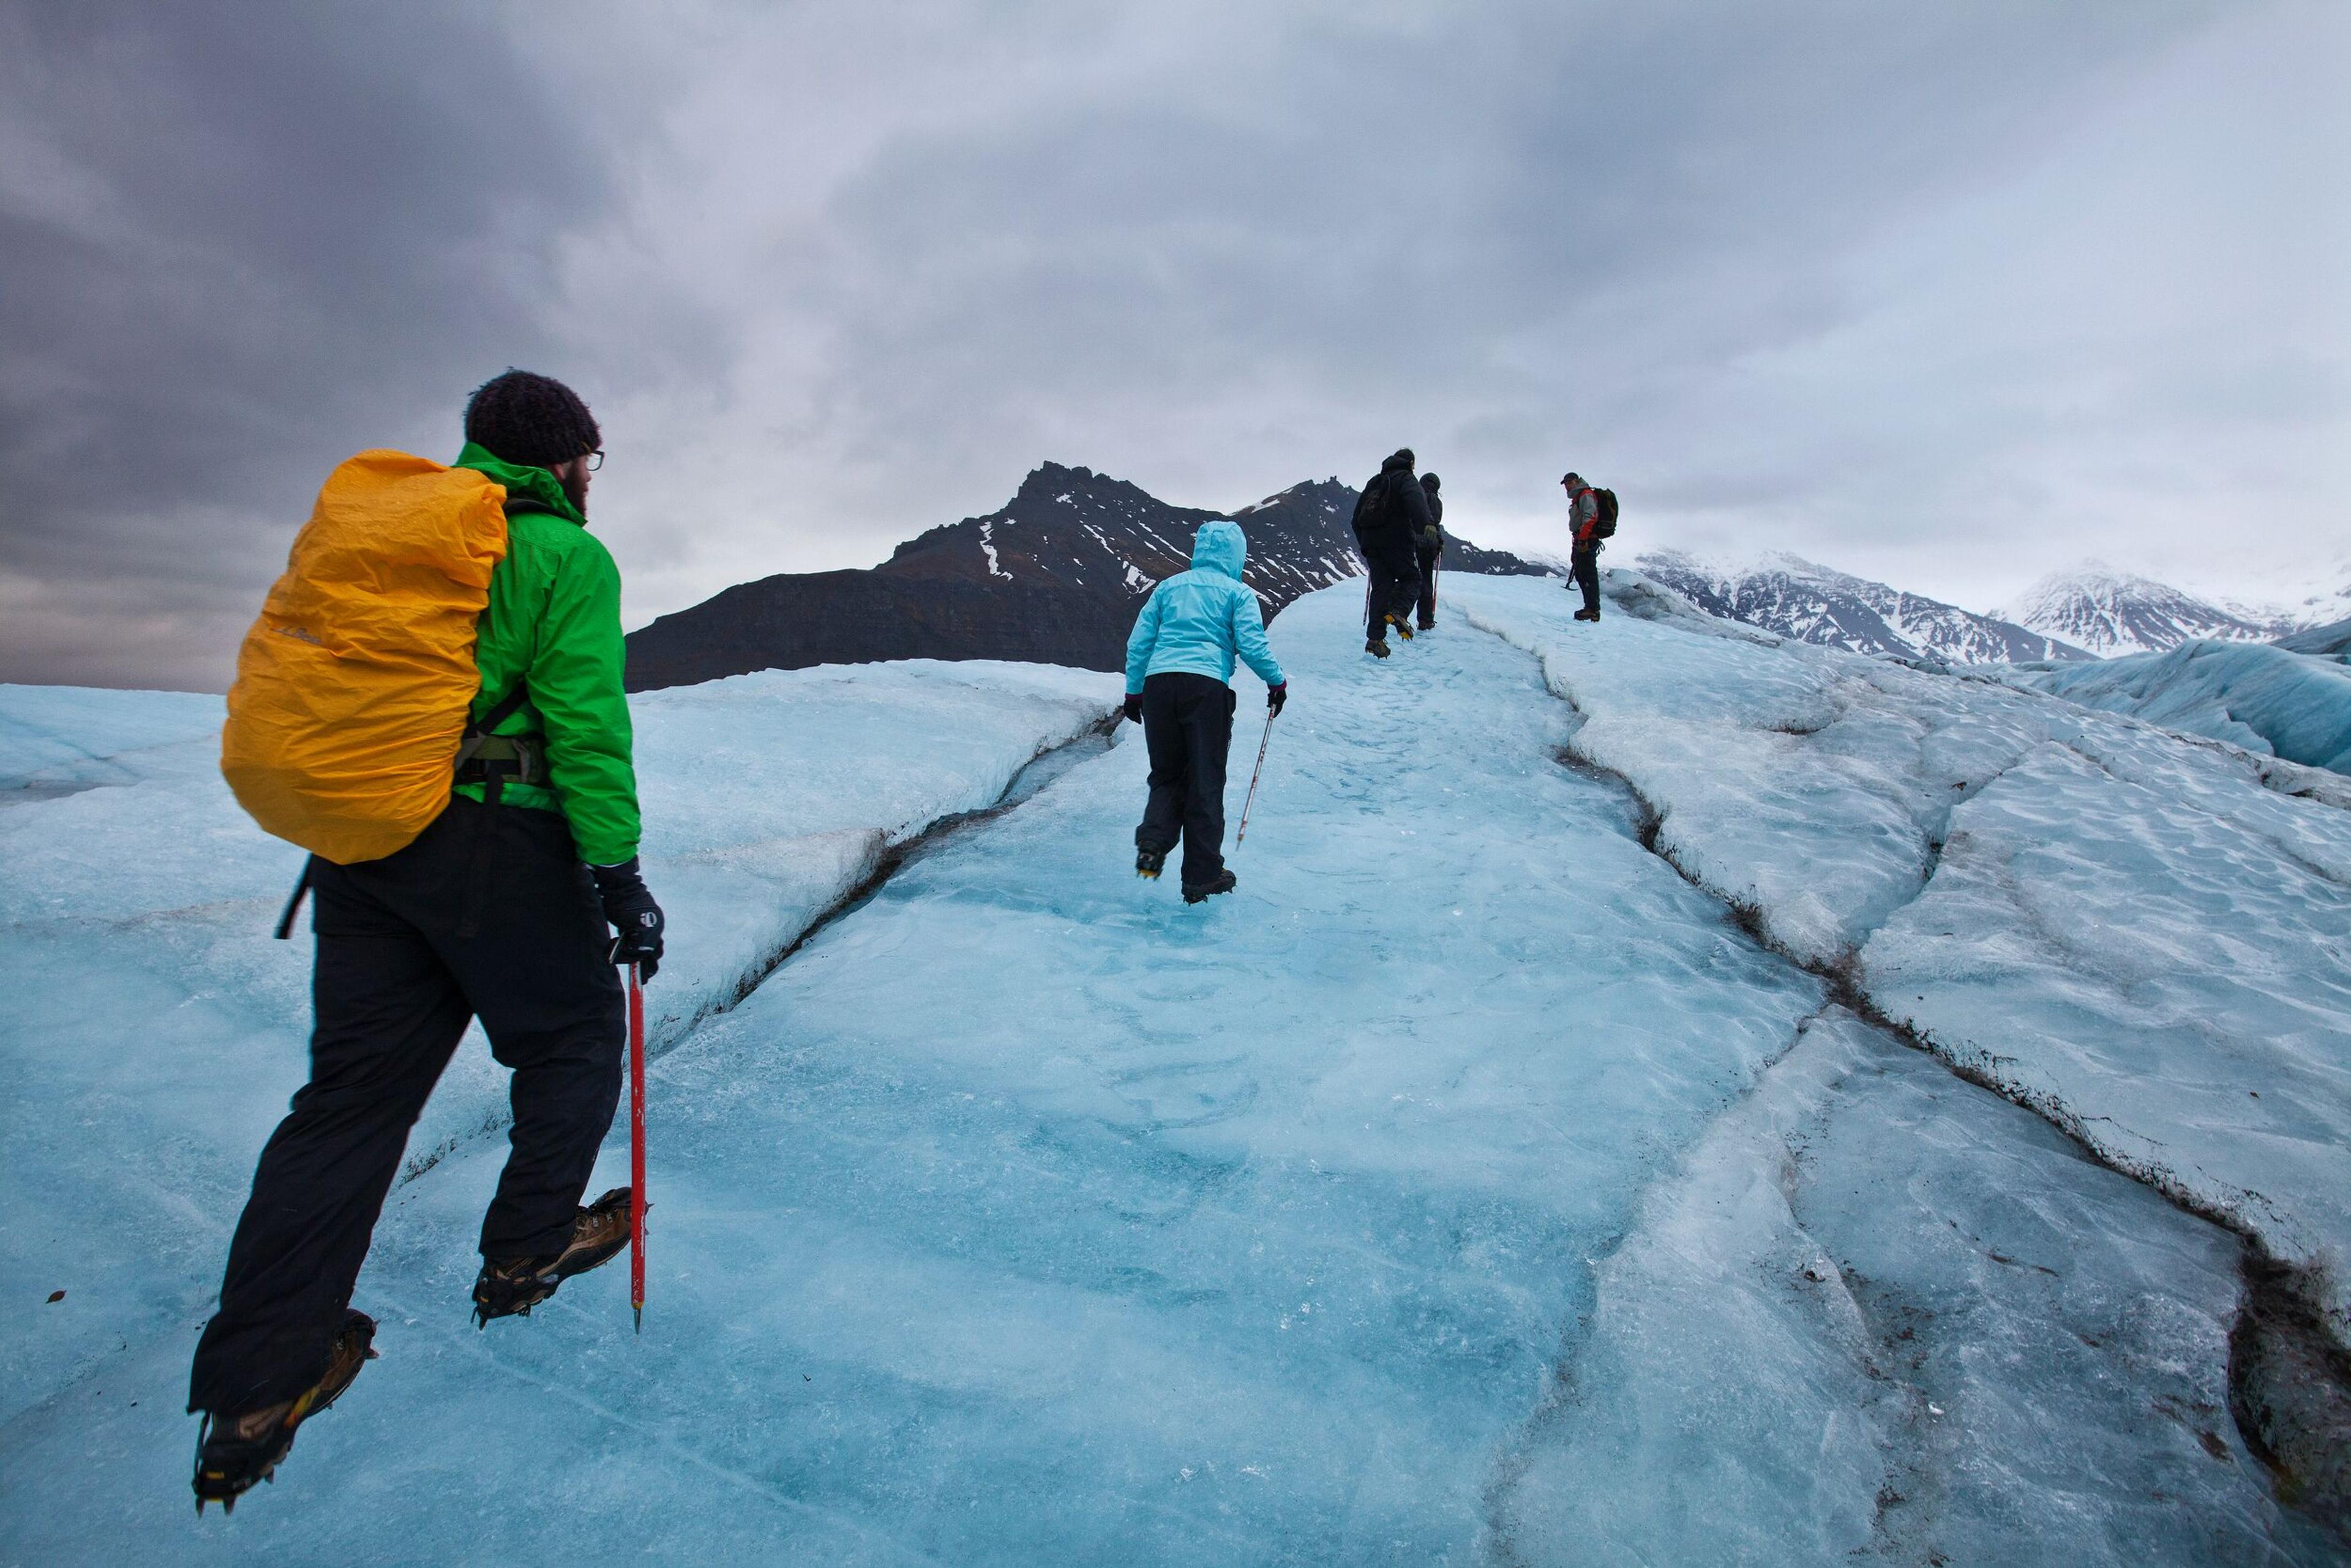 Group of hikers ascending a vivid blue glacier.